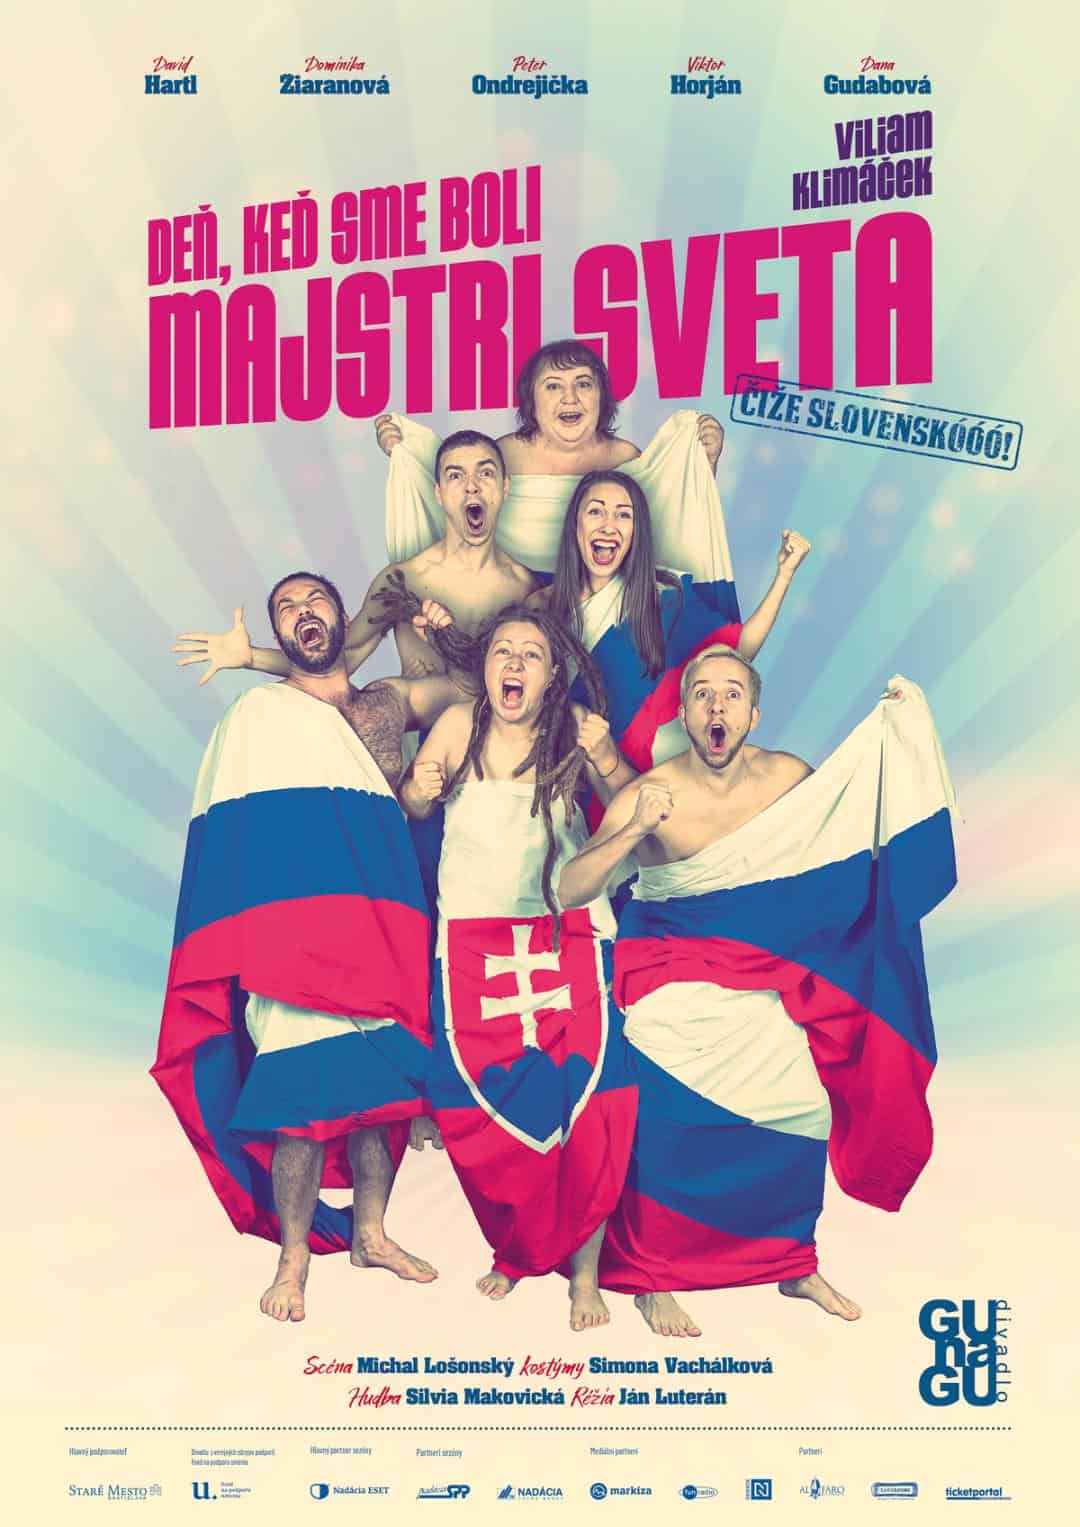 gunagu - slovenskooo - Majstri sveta, len keď sa nám to hodí? Vtipný odkaz spoločnosti od divadelníkov z GuNaGu